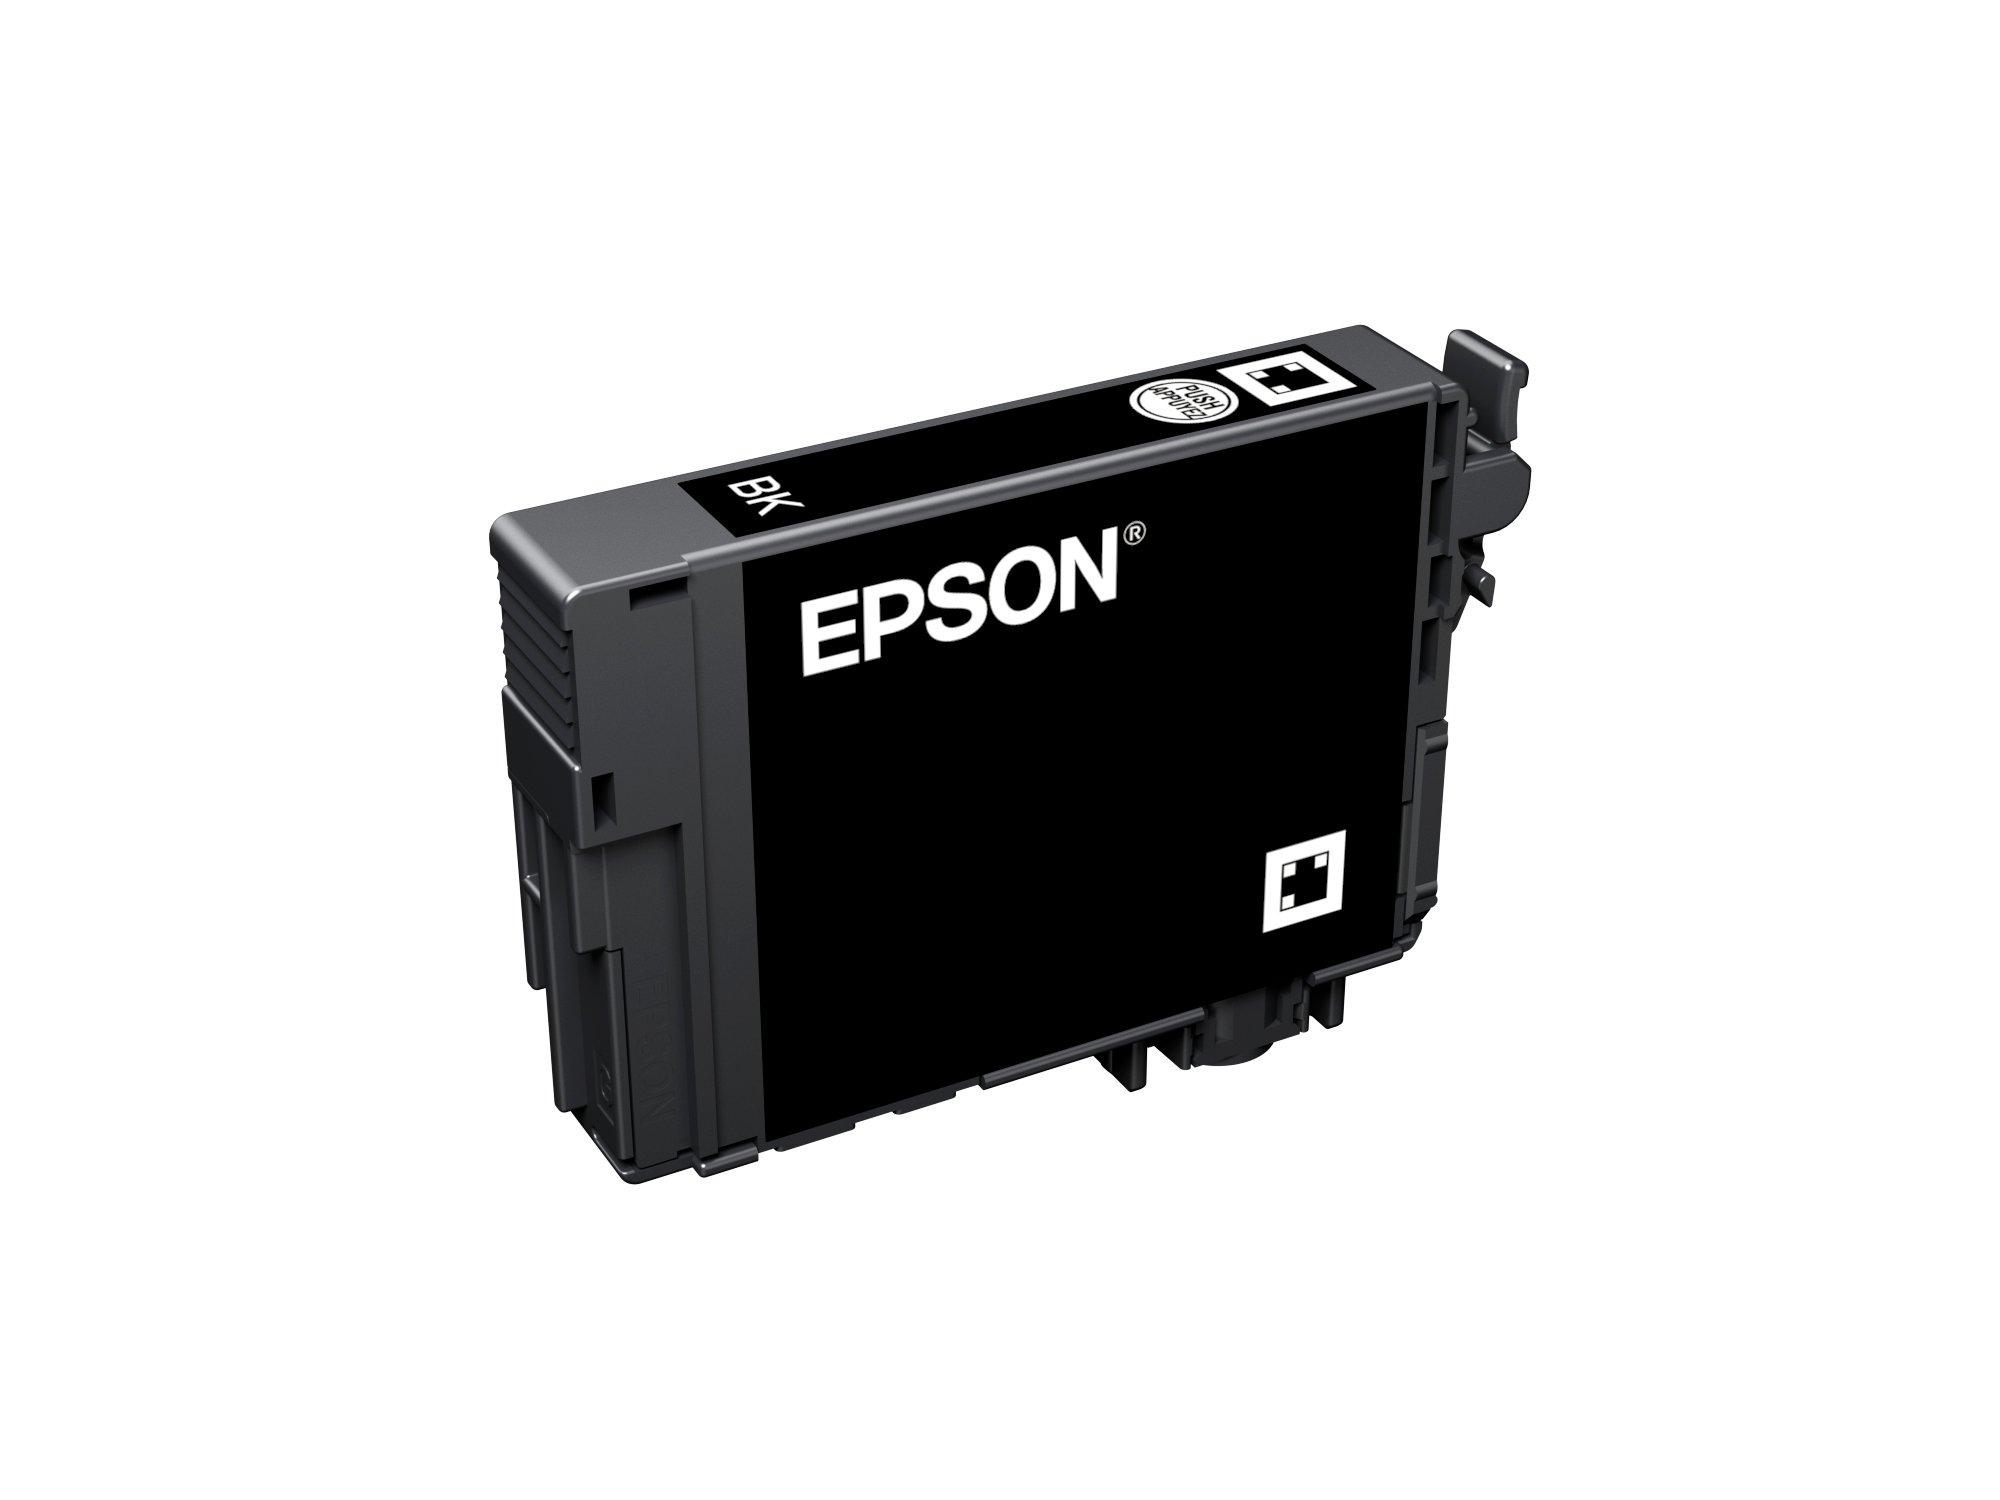 Epson 502 XL Noir - Couleurs - Cartouches d'encre compatible - pack de 4  (1x17ml + 3x14ml) pas cher